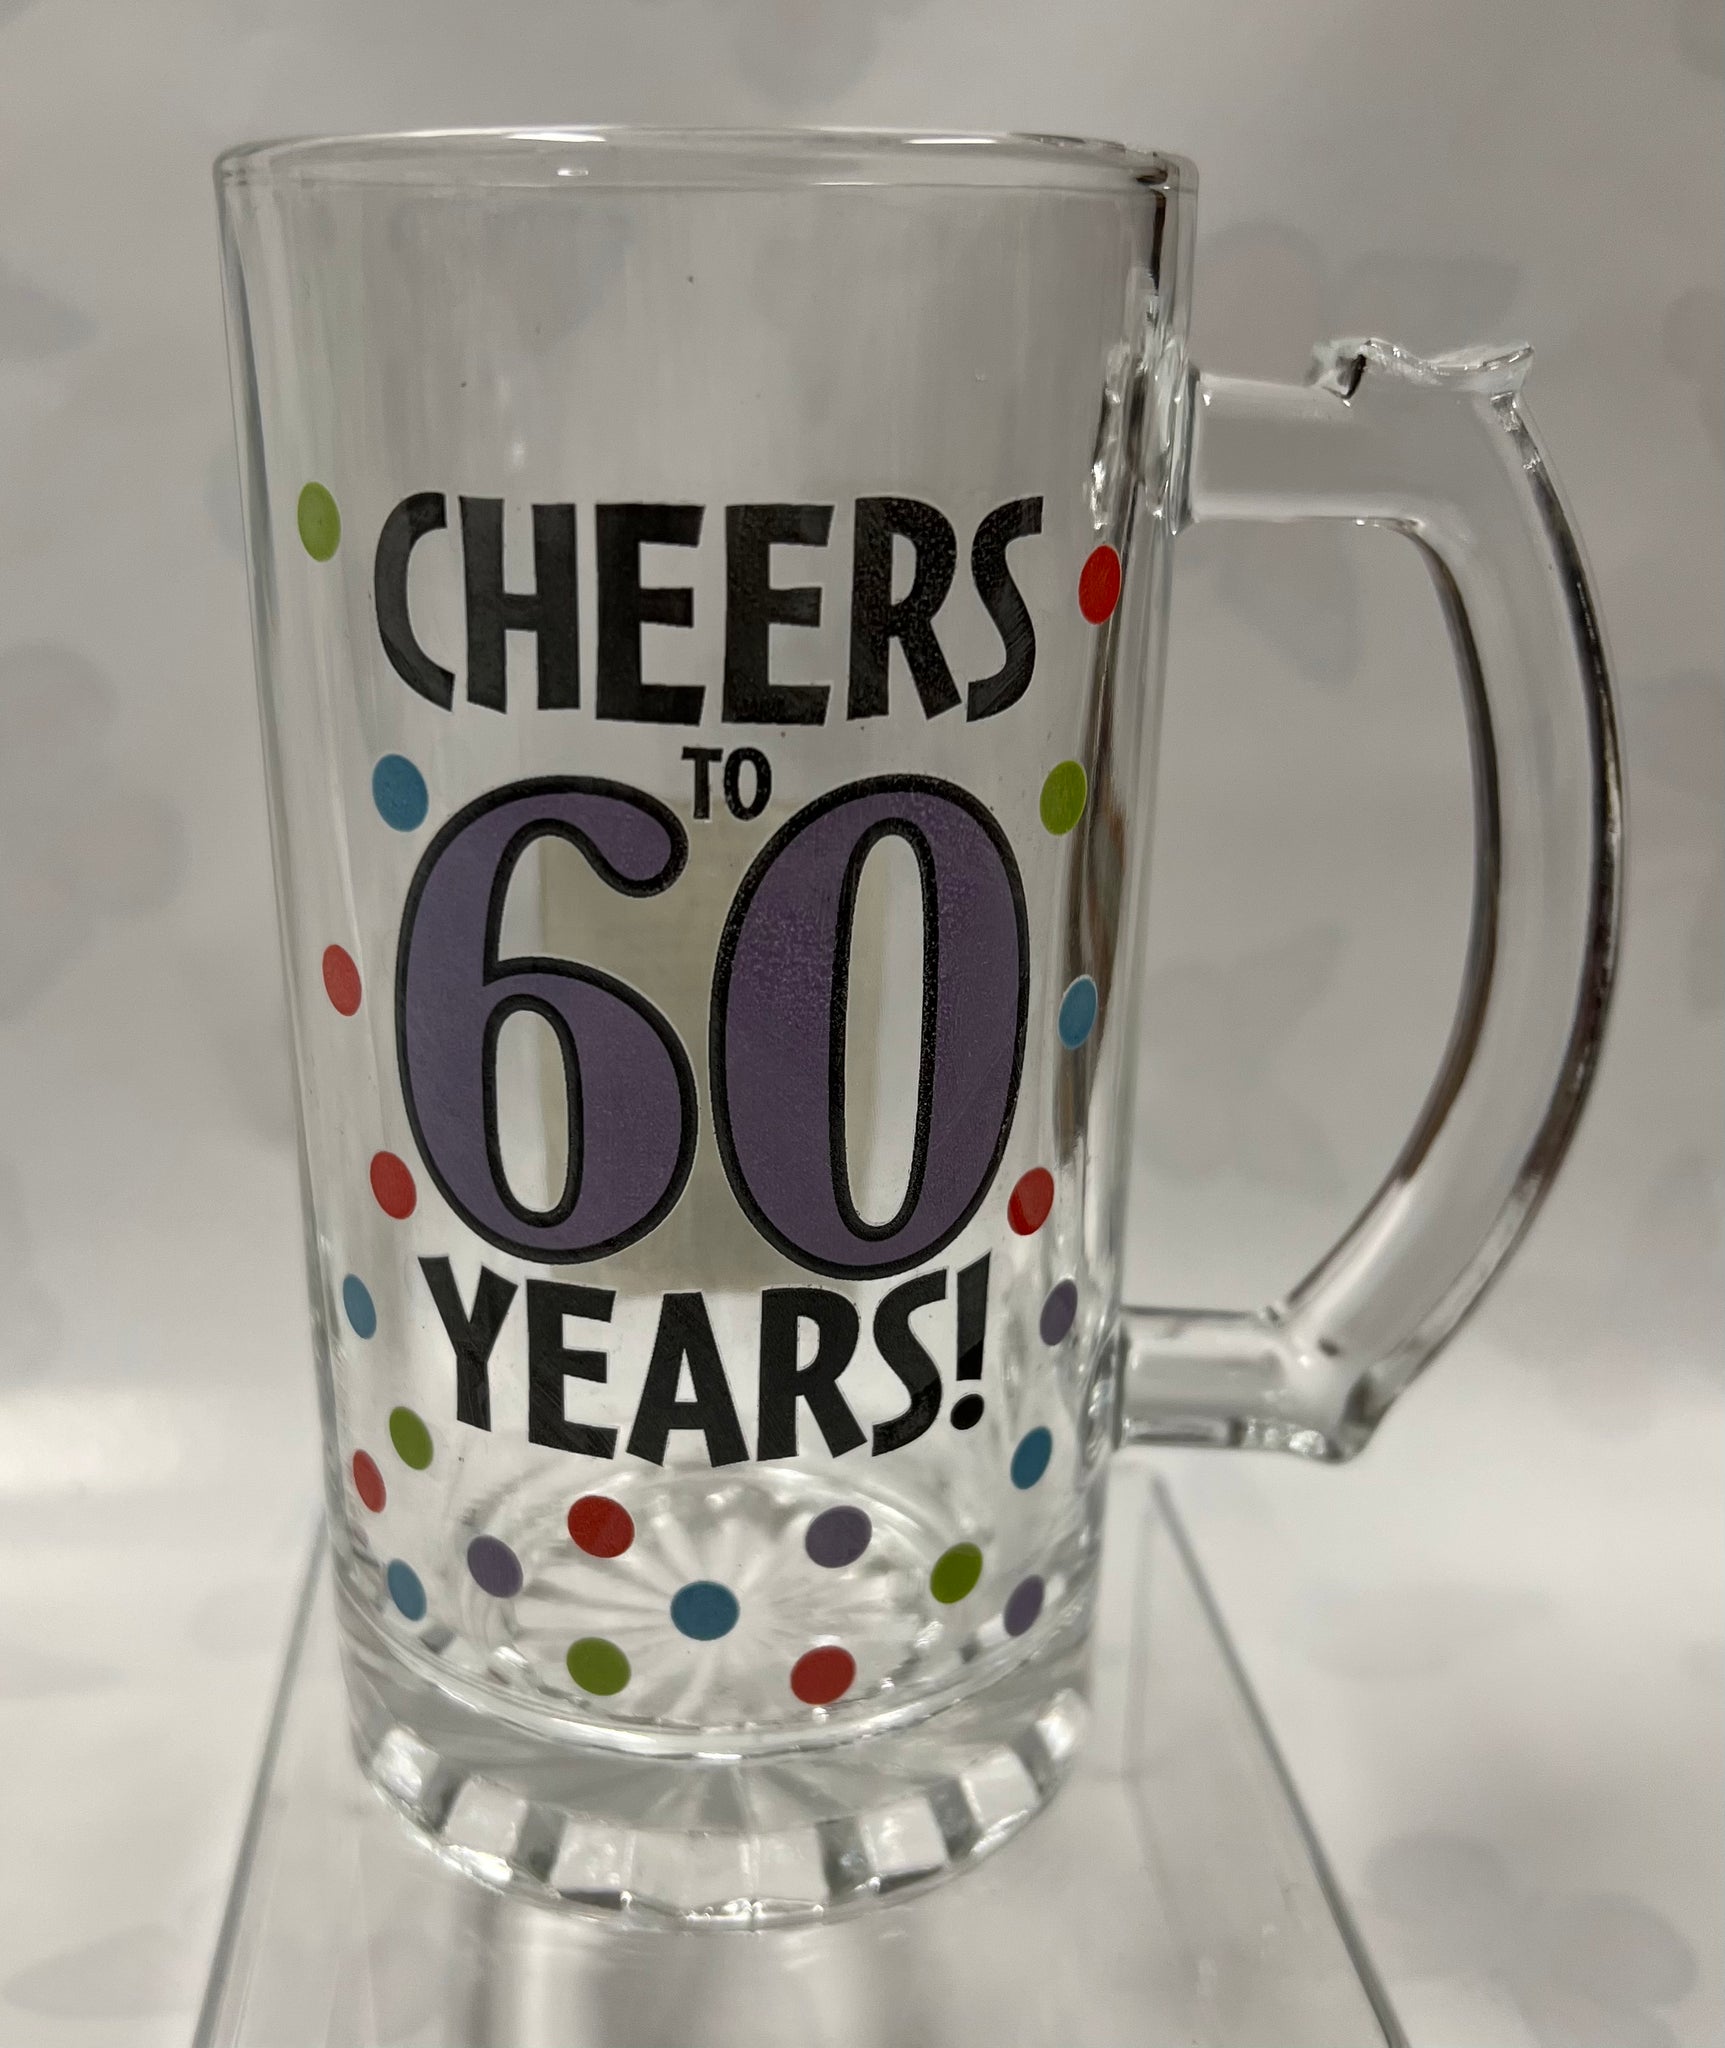 60 Years Beer Mug